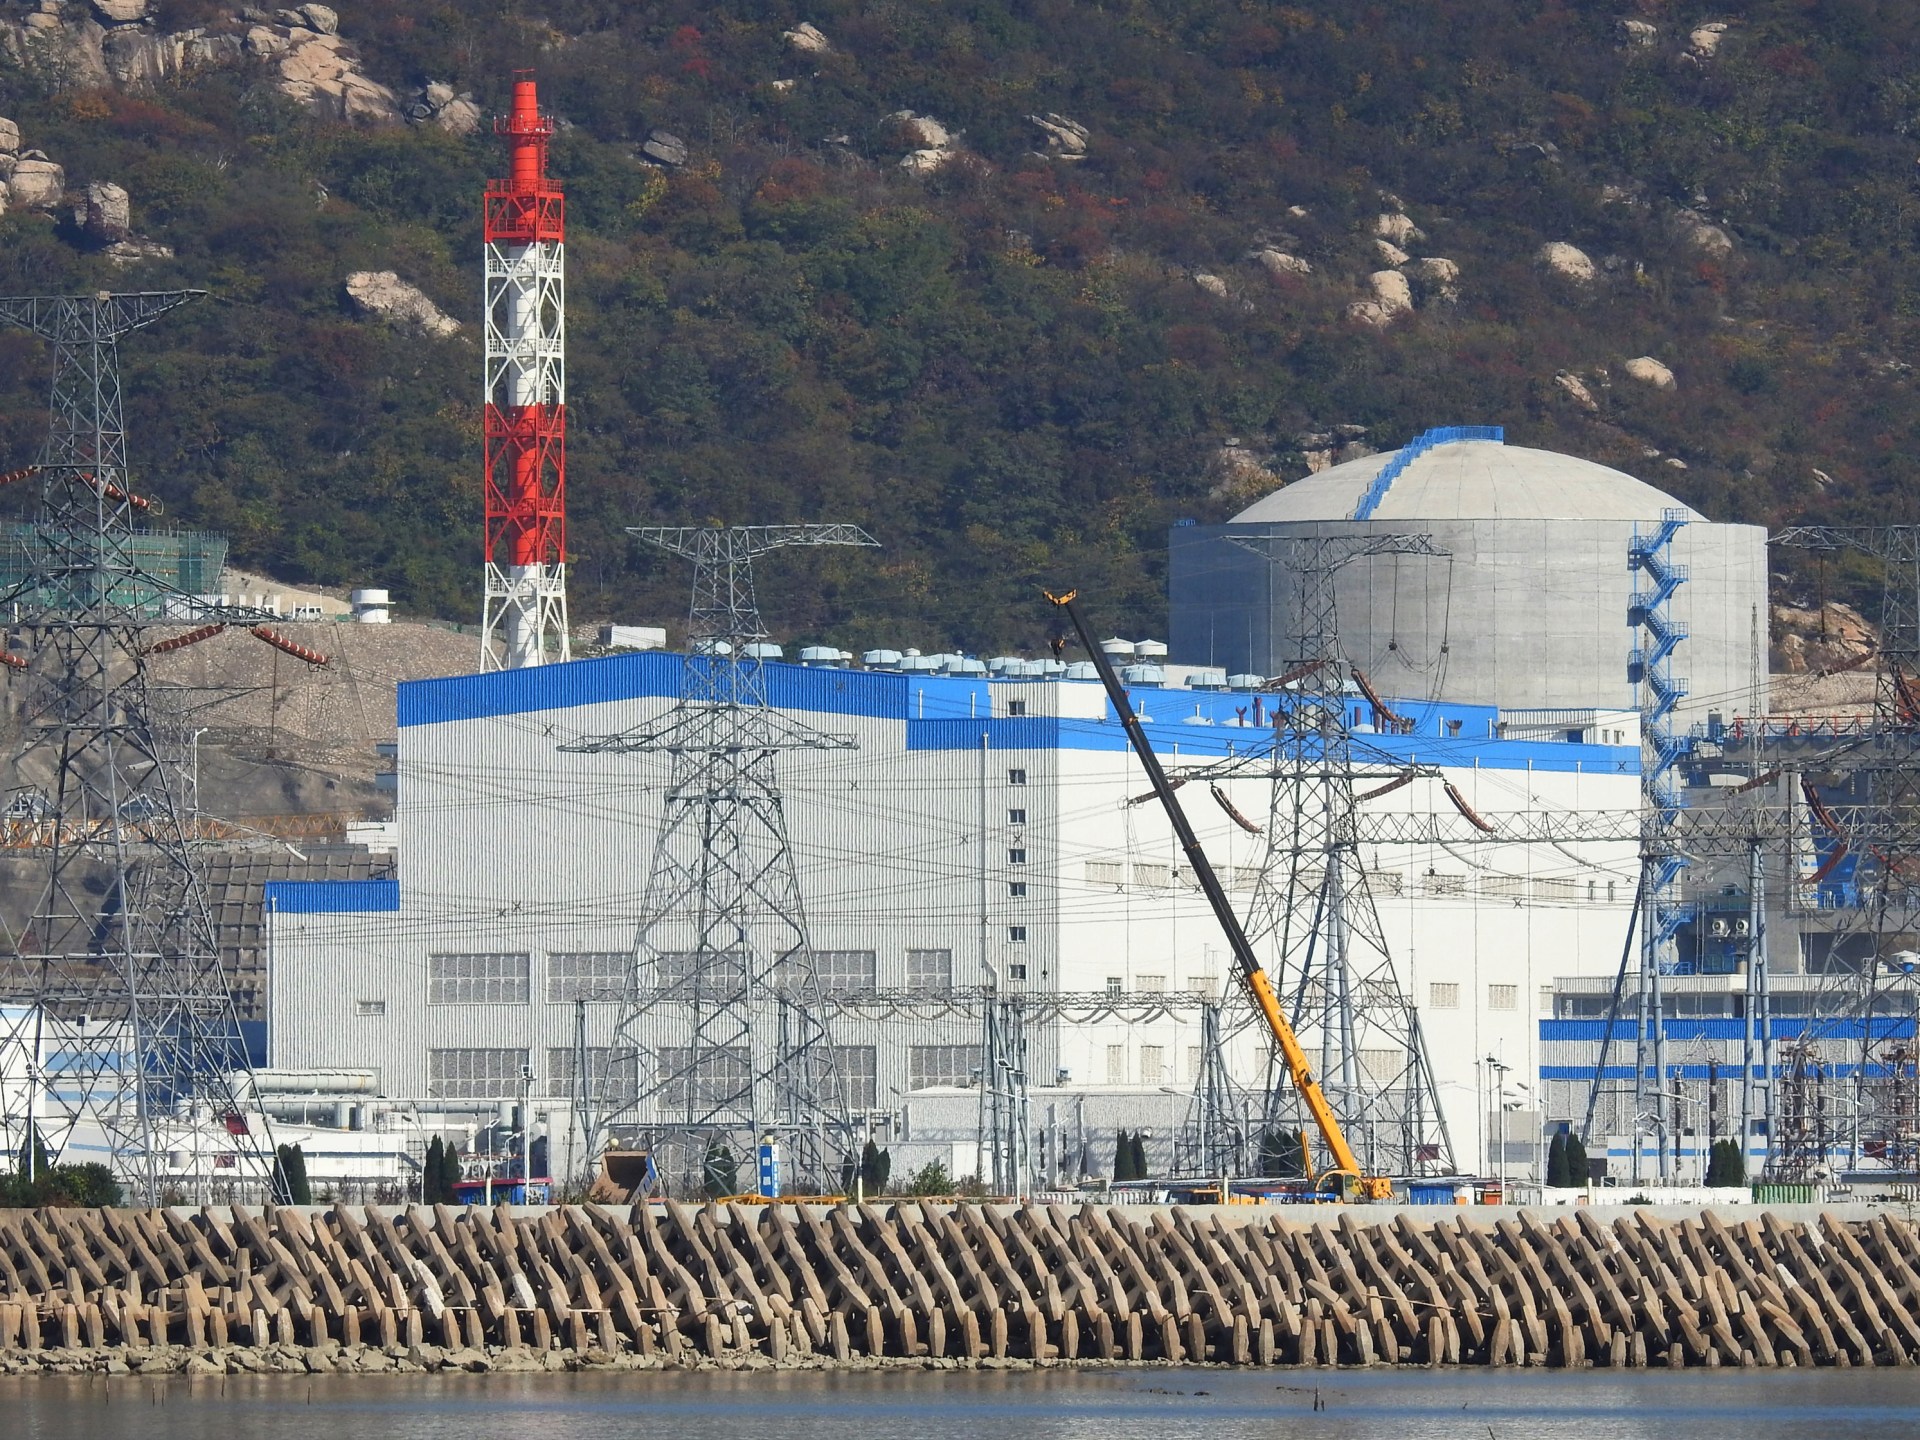 تقرير: الولايات المتحدة تتخلف كثيراً عن الصين في مجال الطاقة النووية |  الطاقة النووية